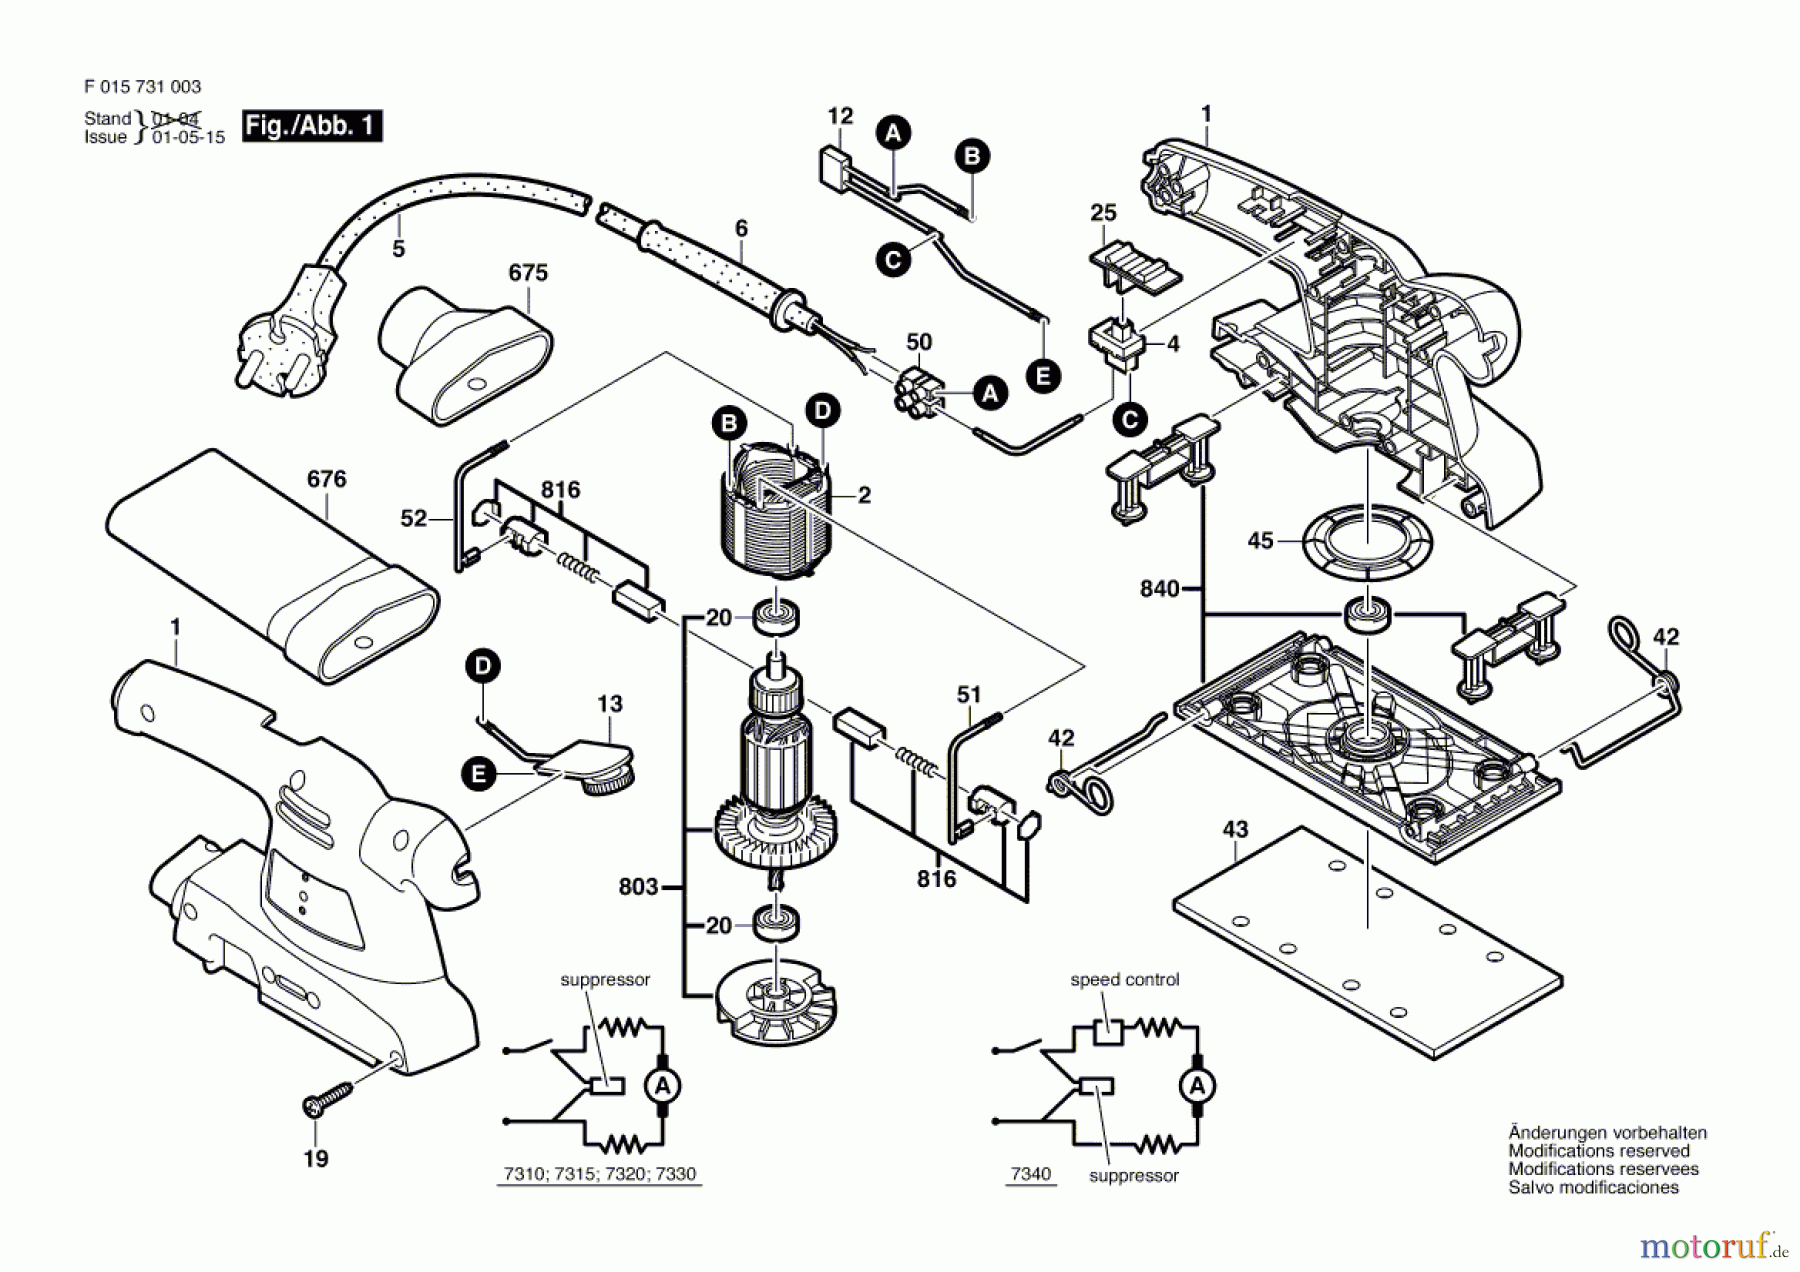  Bosch Werkzeug Schwingschleifer 7320 Seite 1